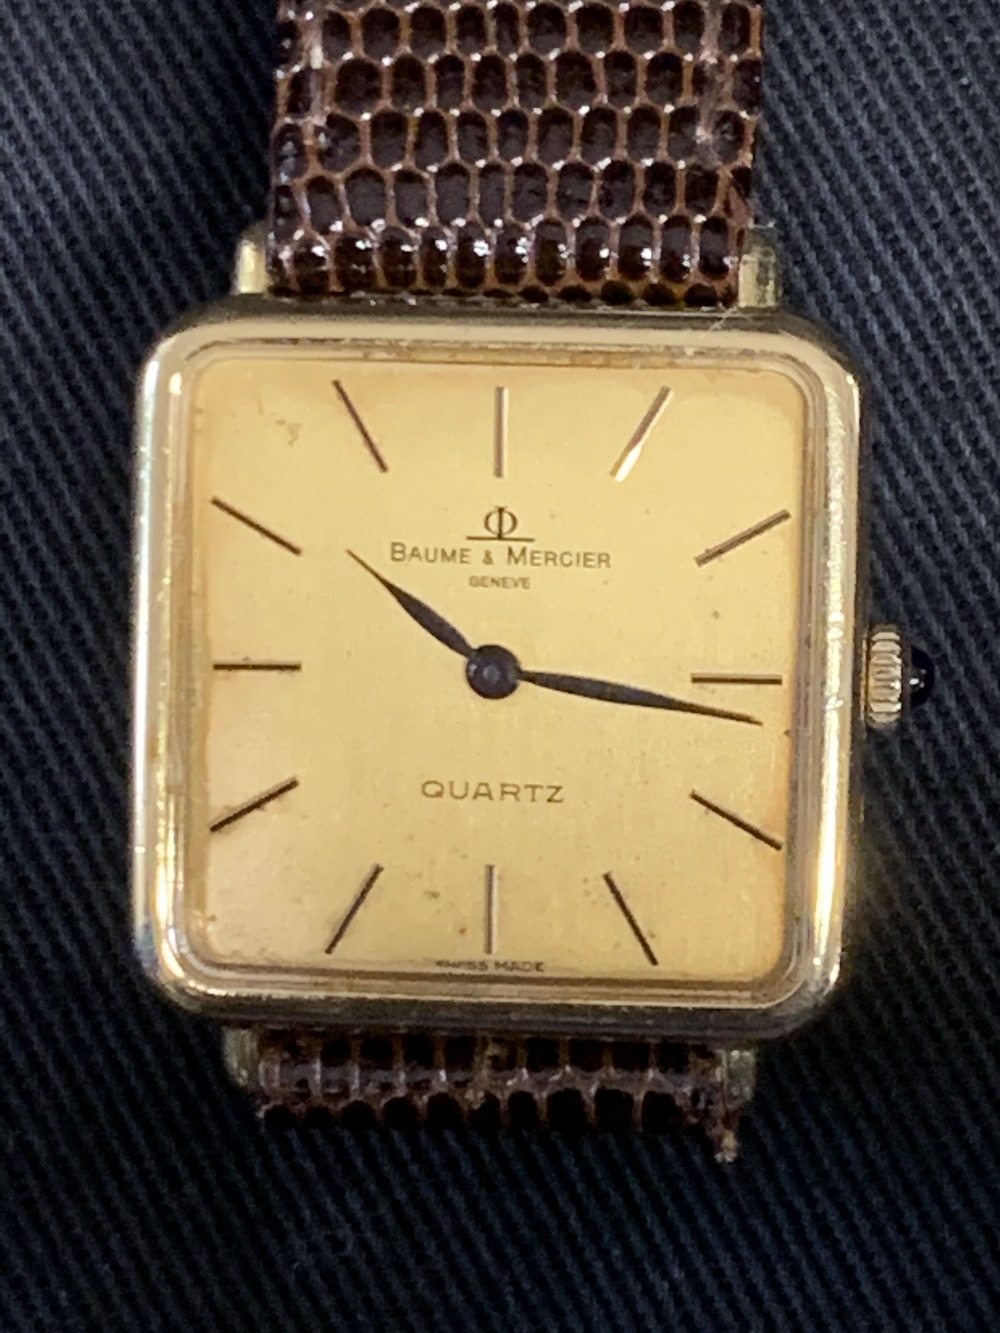 Watches: 18ct. gold Baume and Mercier quartz watch on brown lizard skin strap.